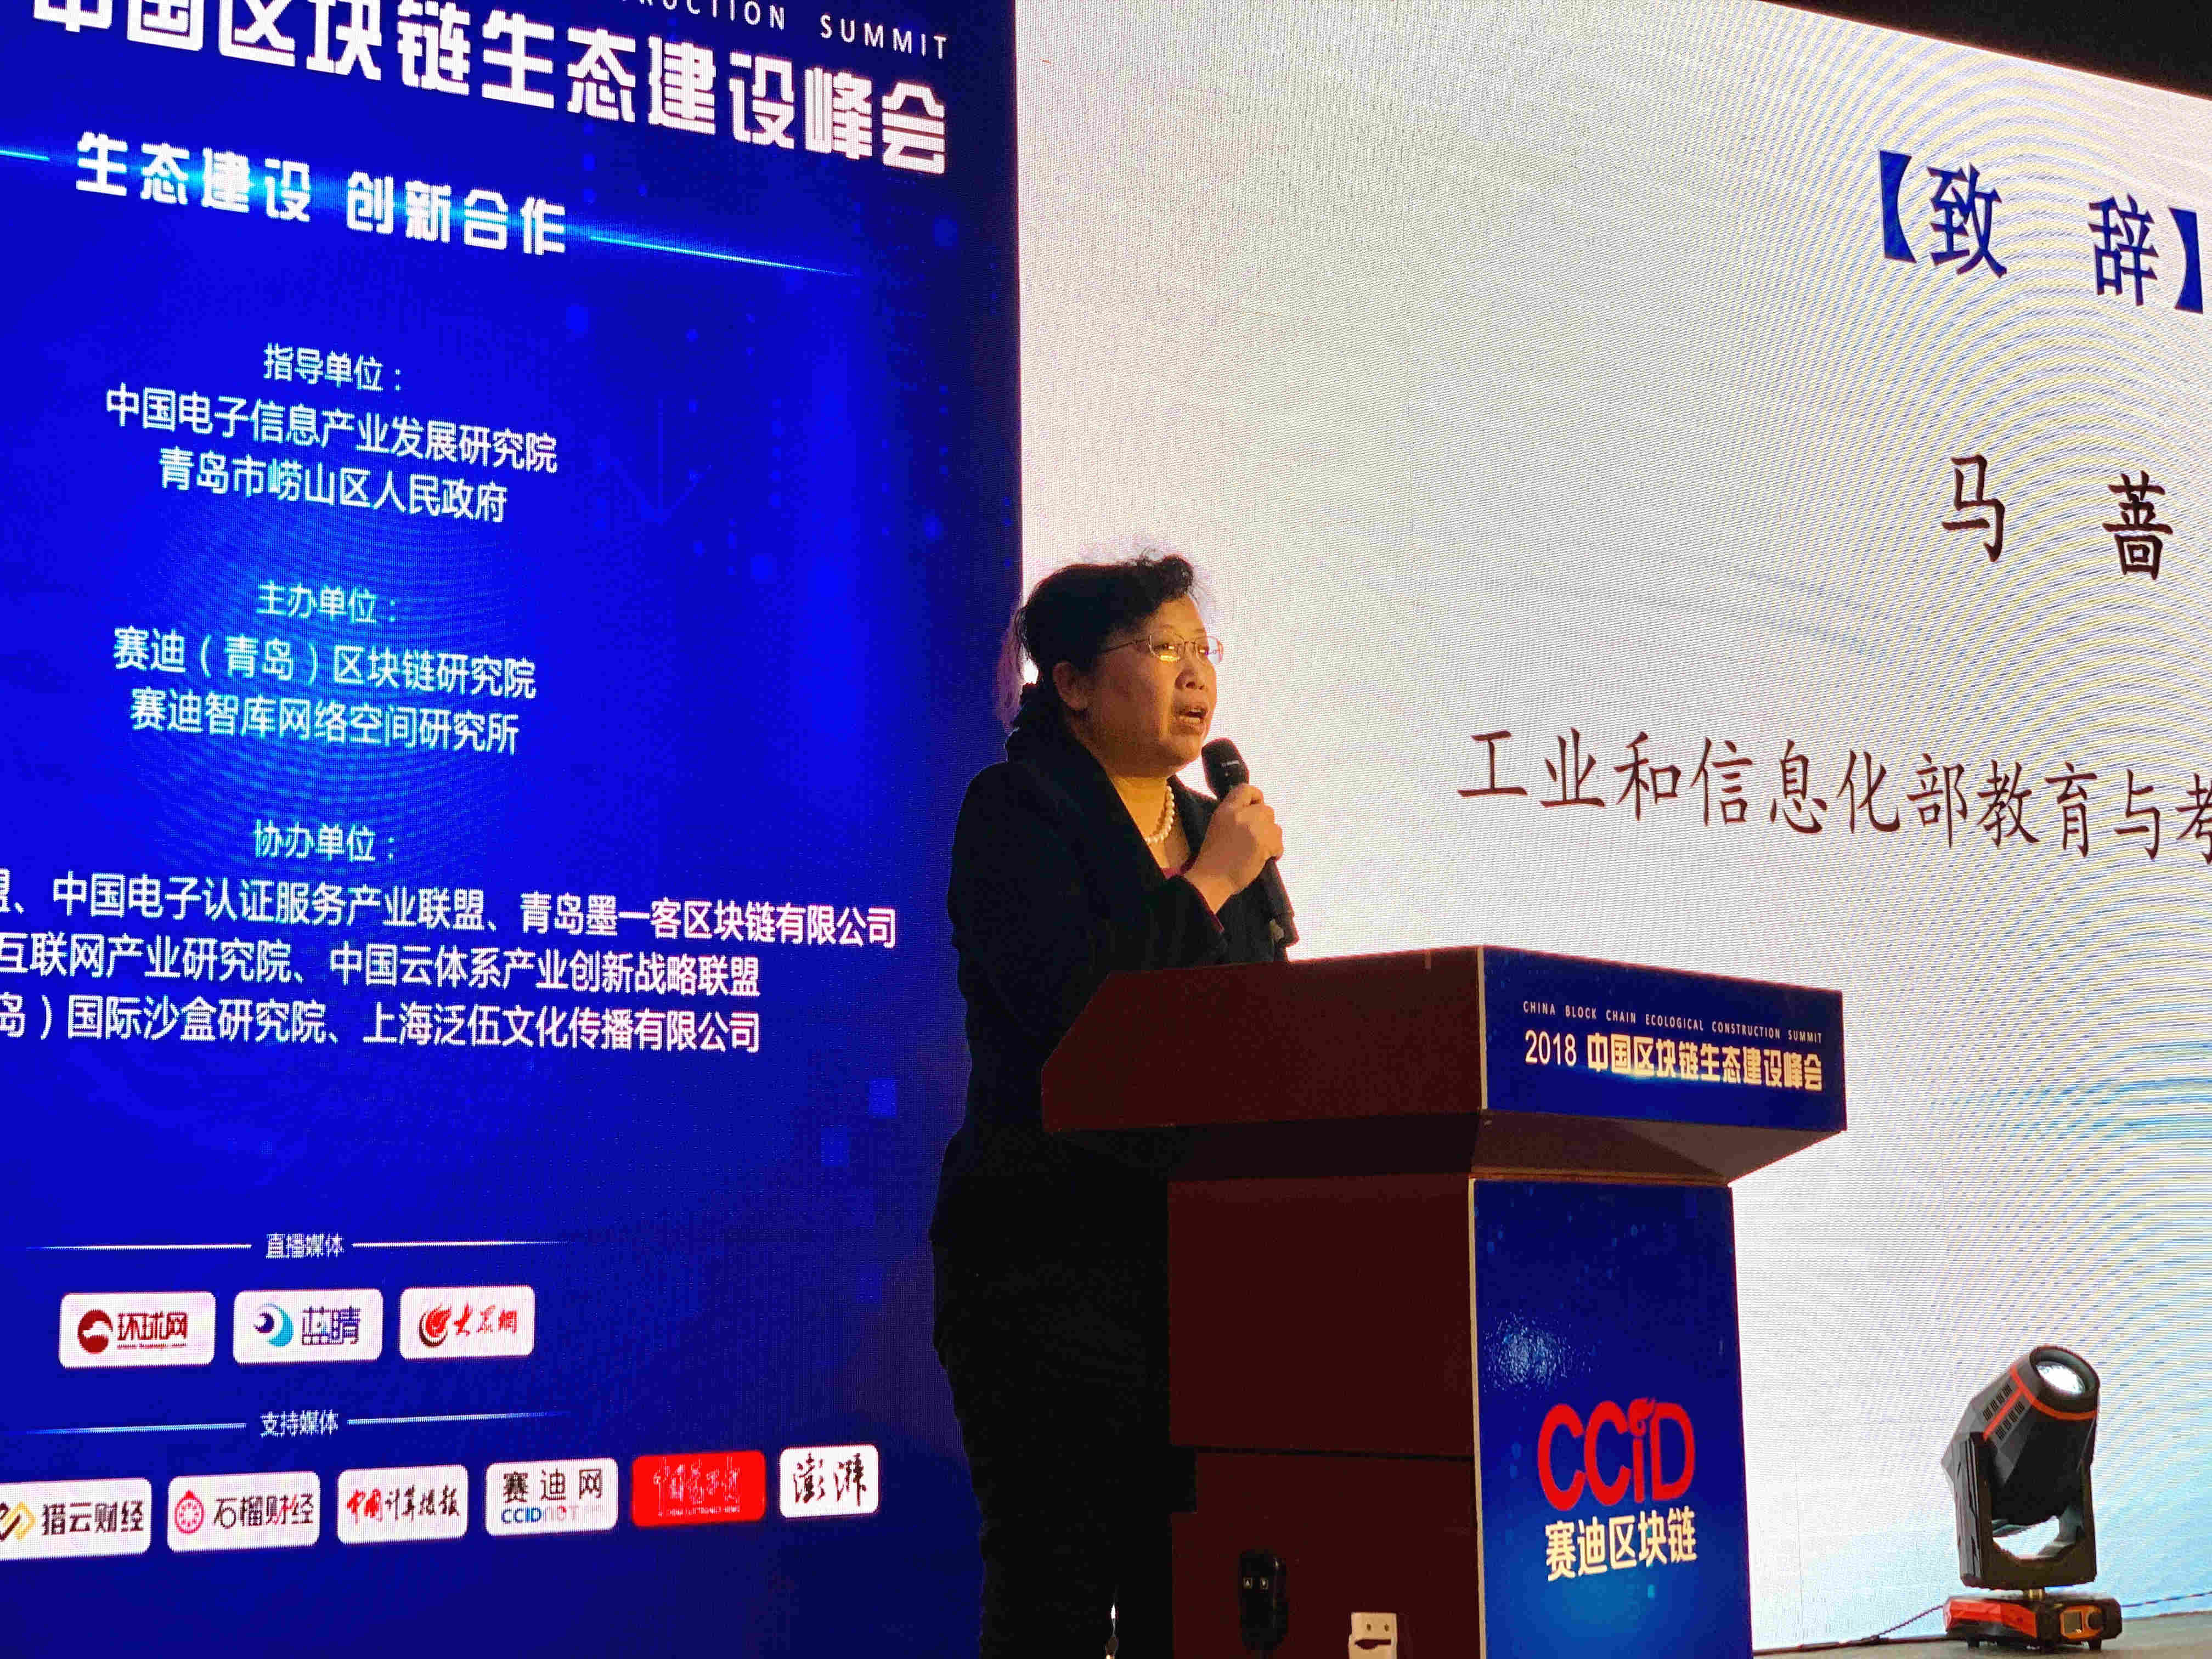 生态建设 创新合作 2018中国区块链生态建设峰会在青岛召开